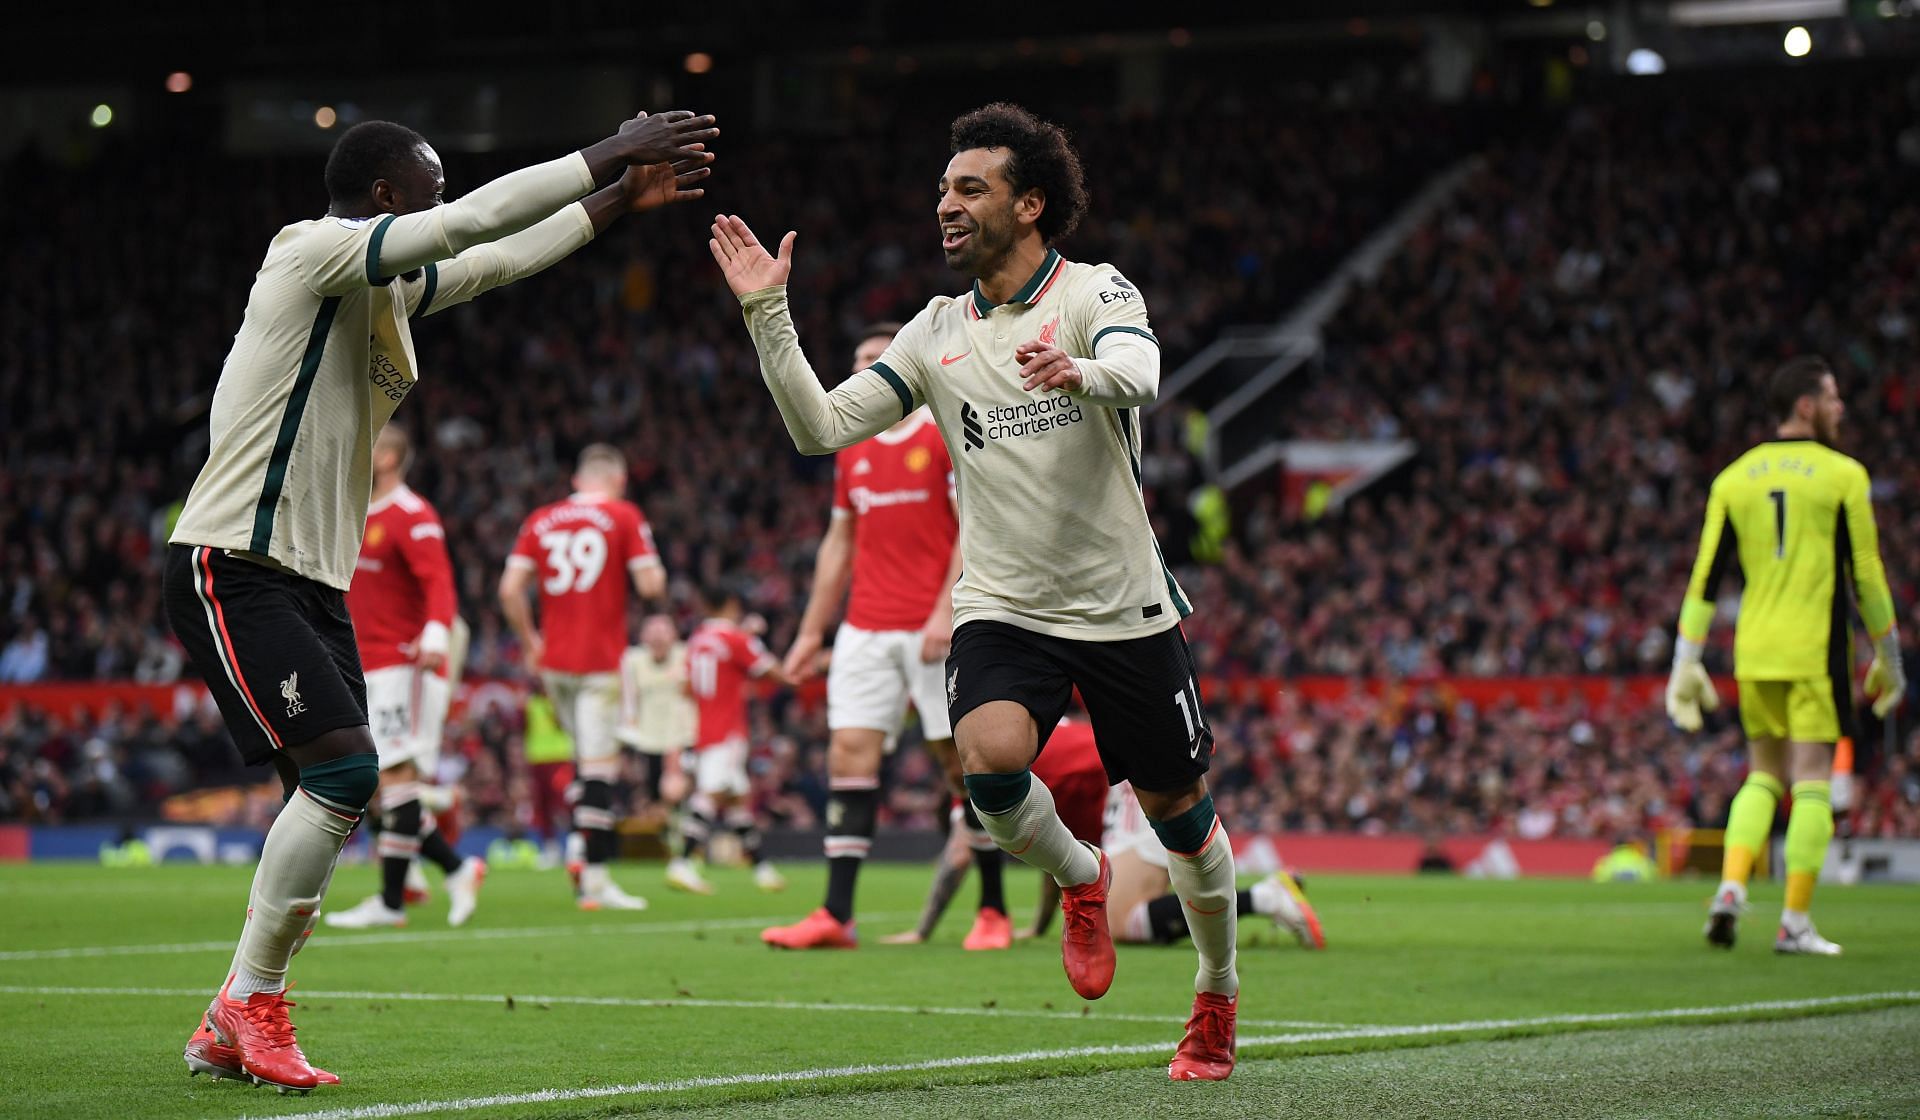 Manchester United vs Liverpool - Mohamed Salah